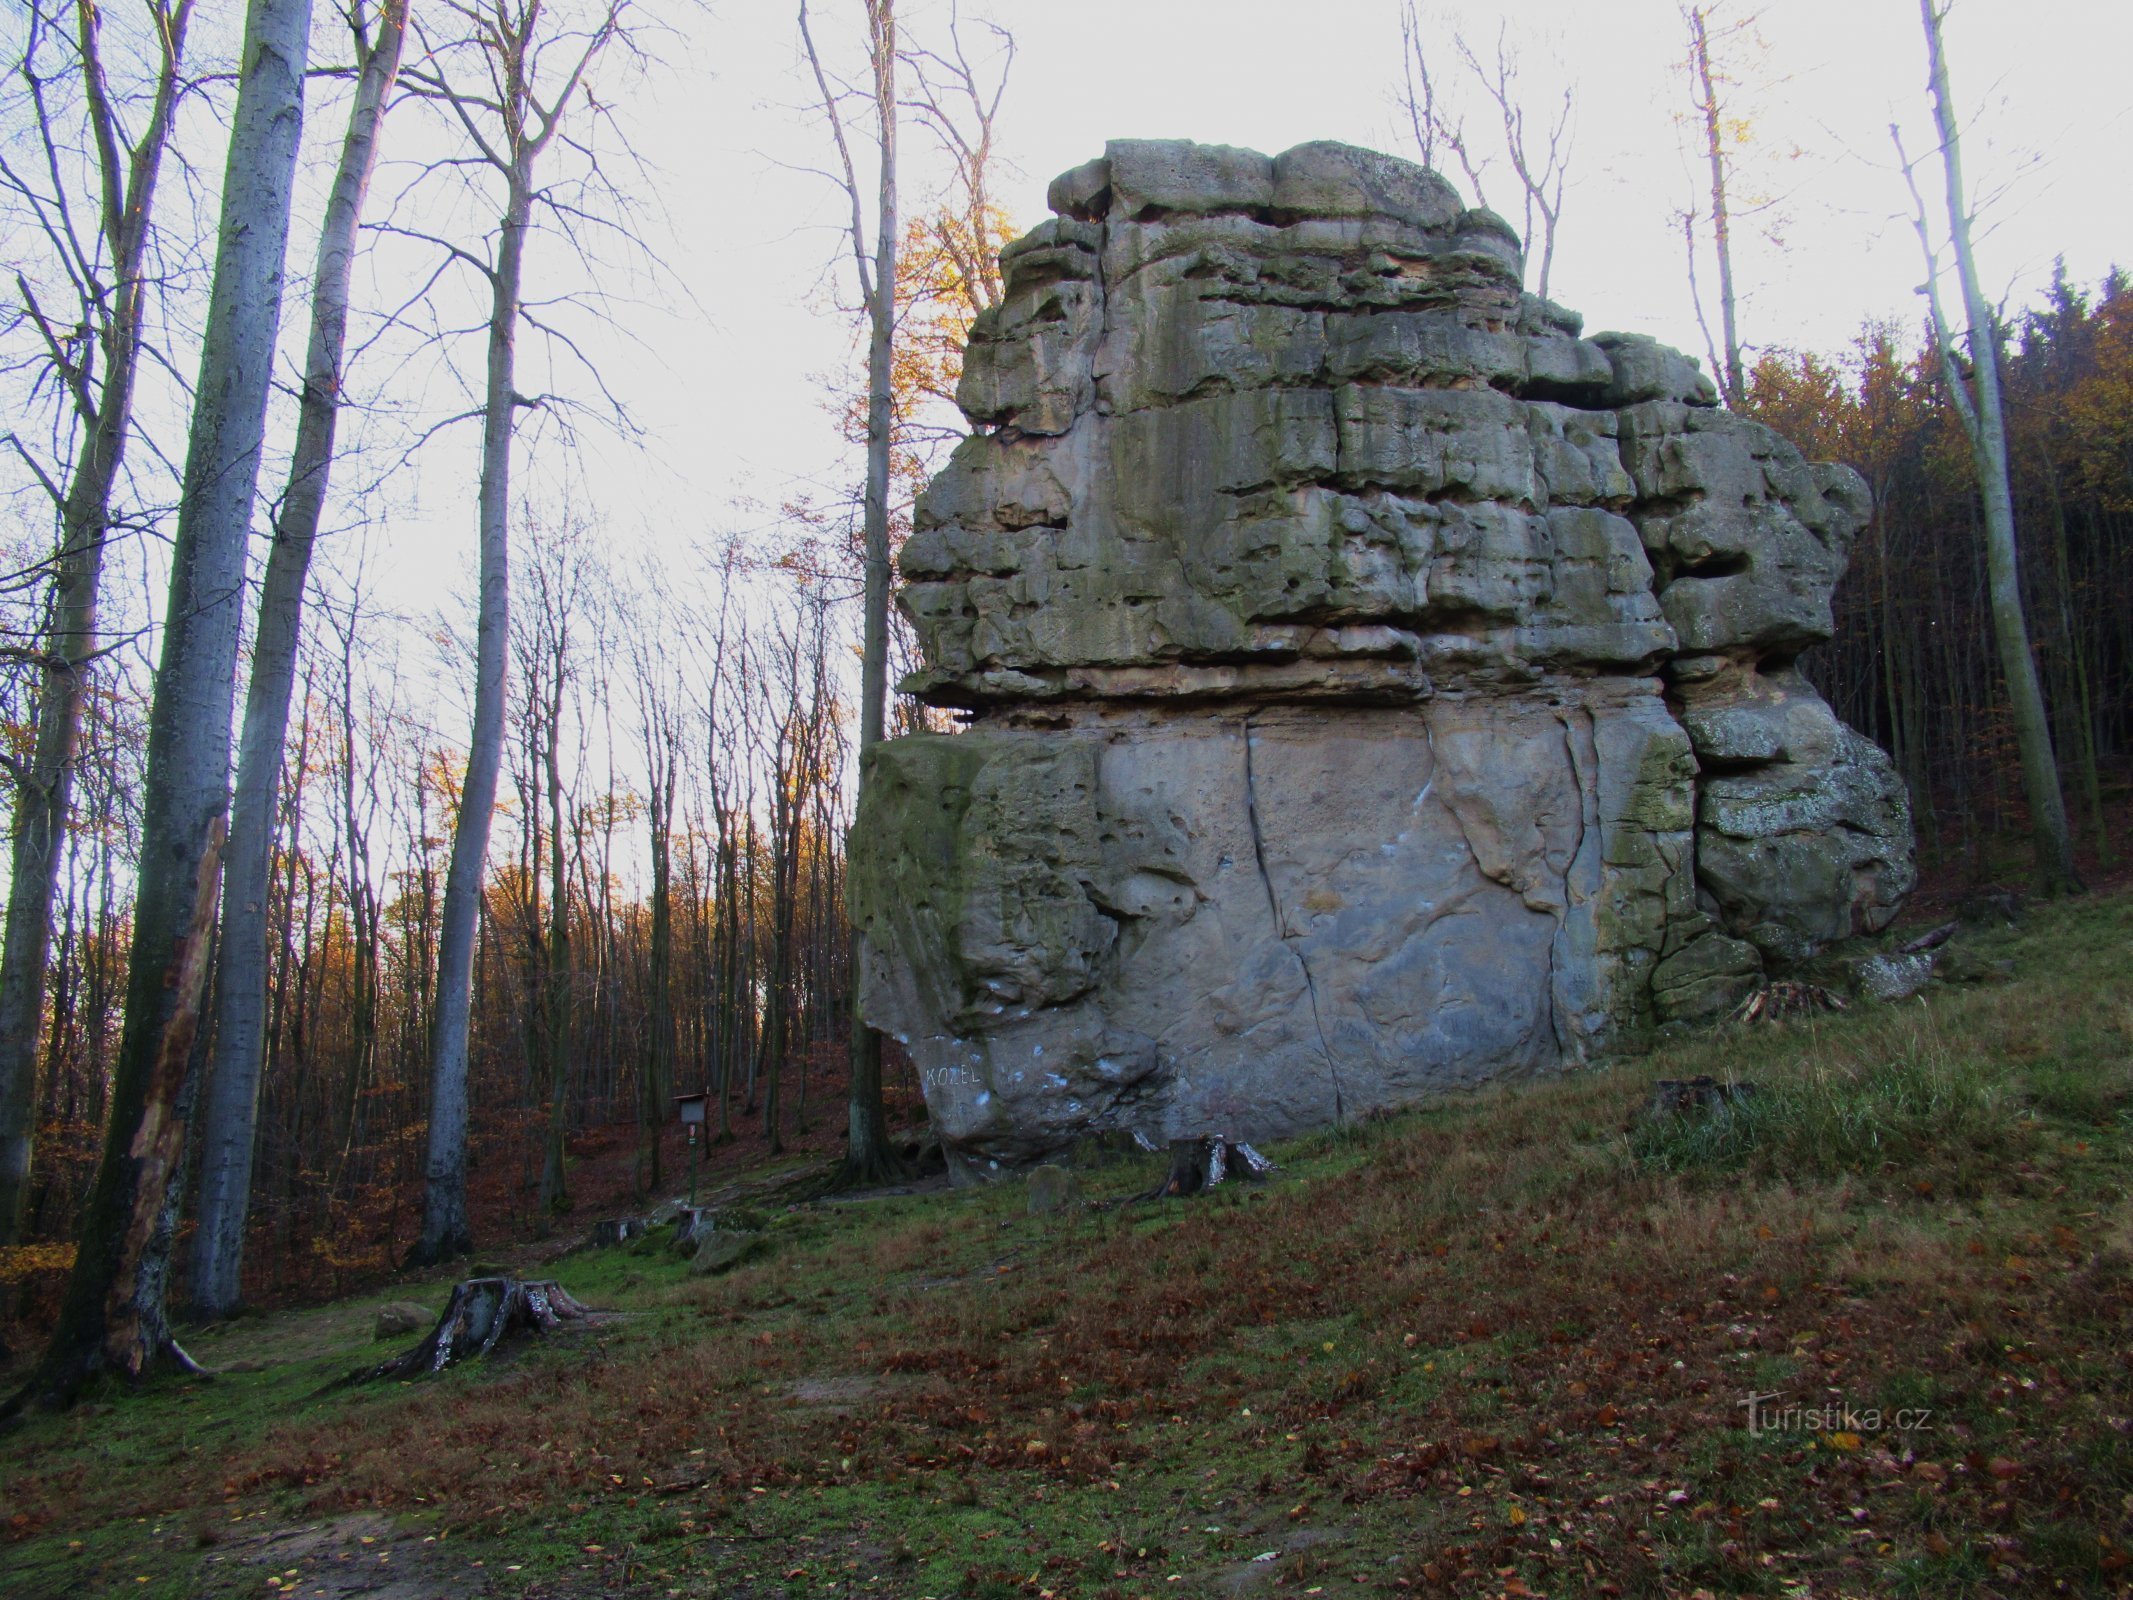 Đến bãi đá thú vị Kozel ở Chřibe